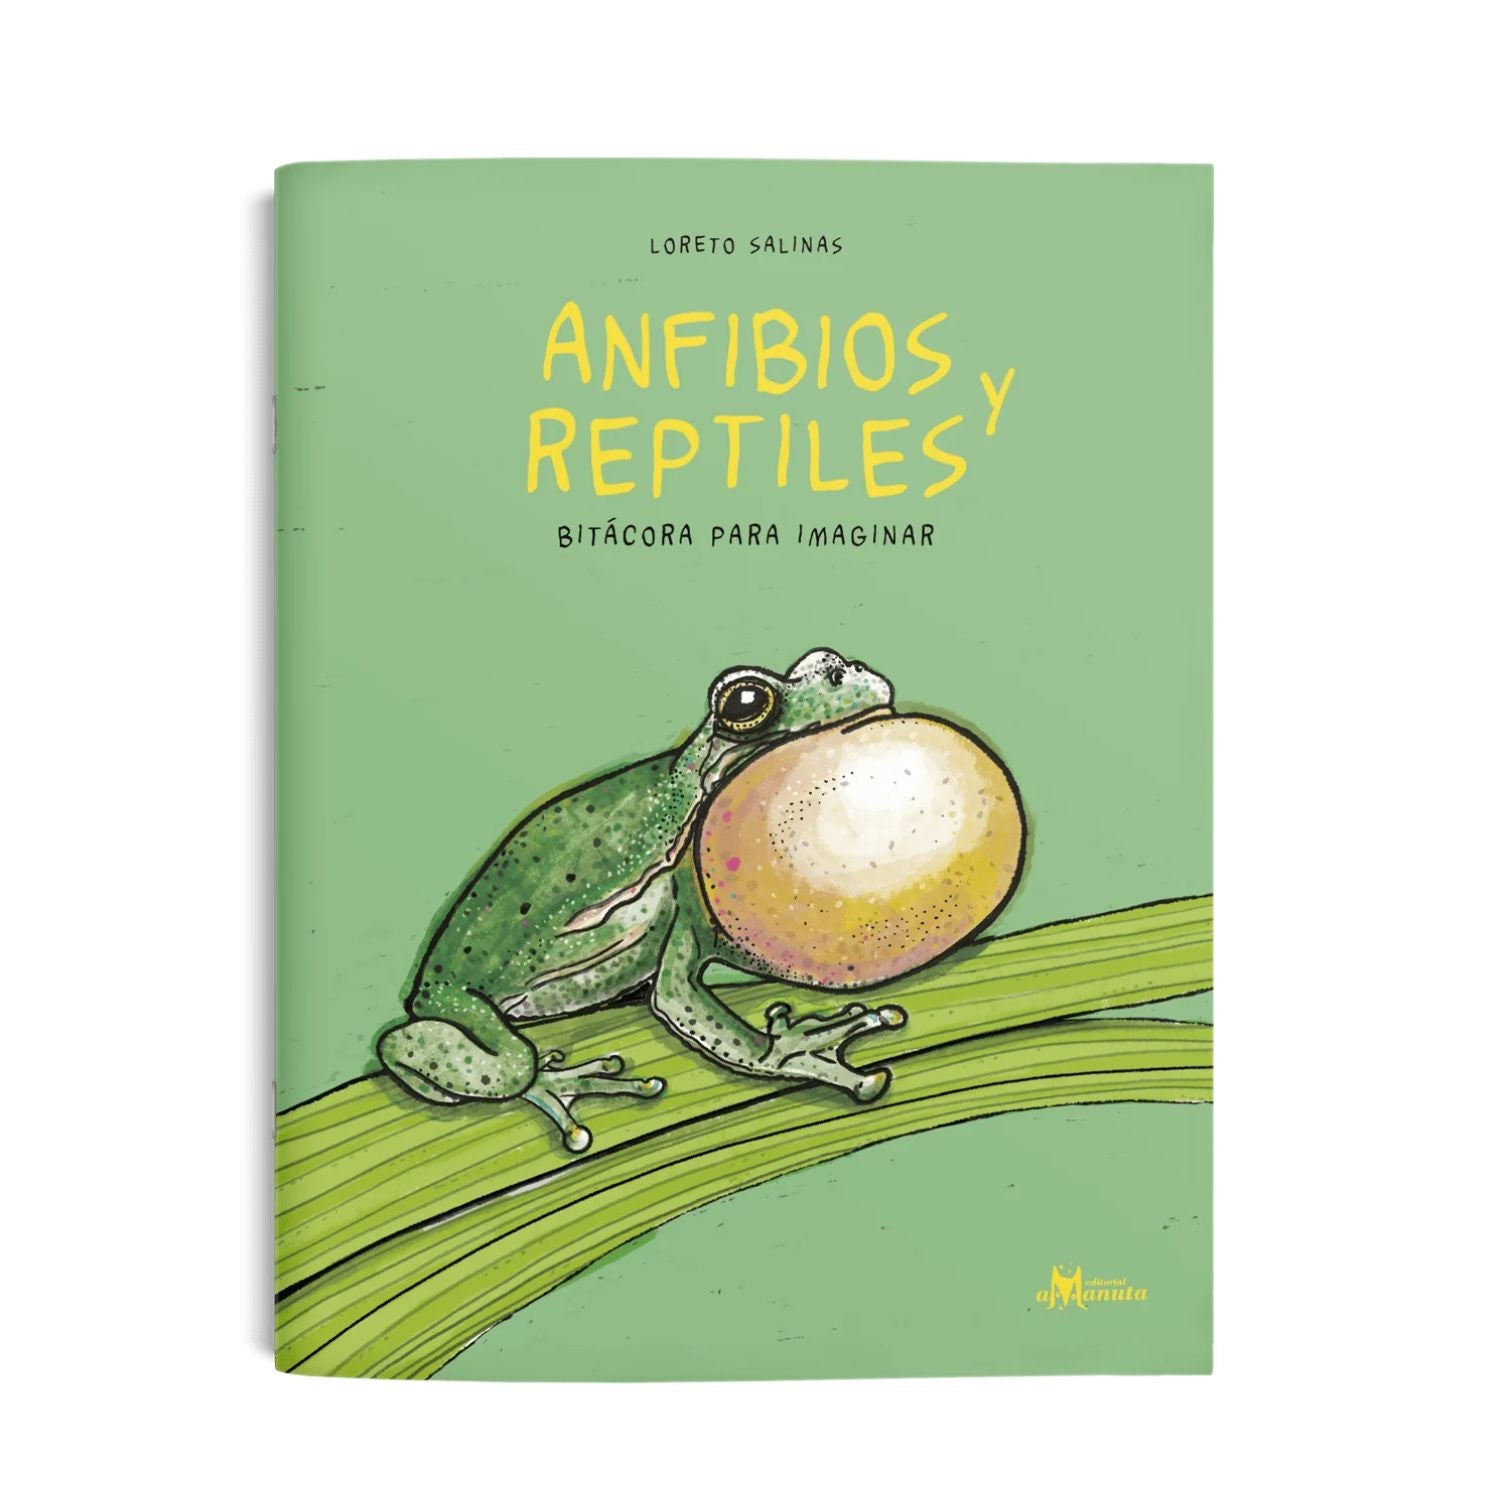 Anfibios y reptiles, bitácora para imaginar